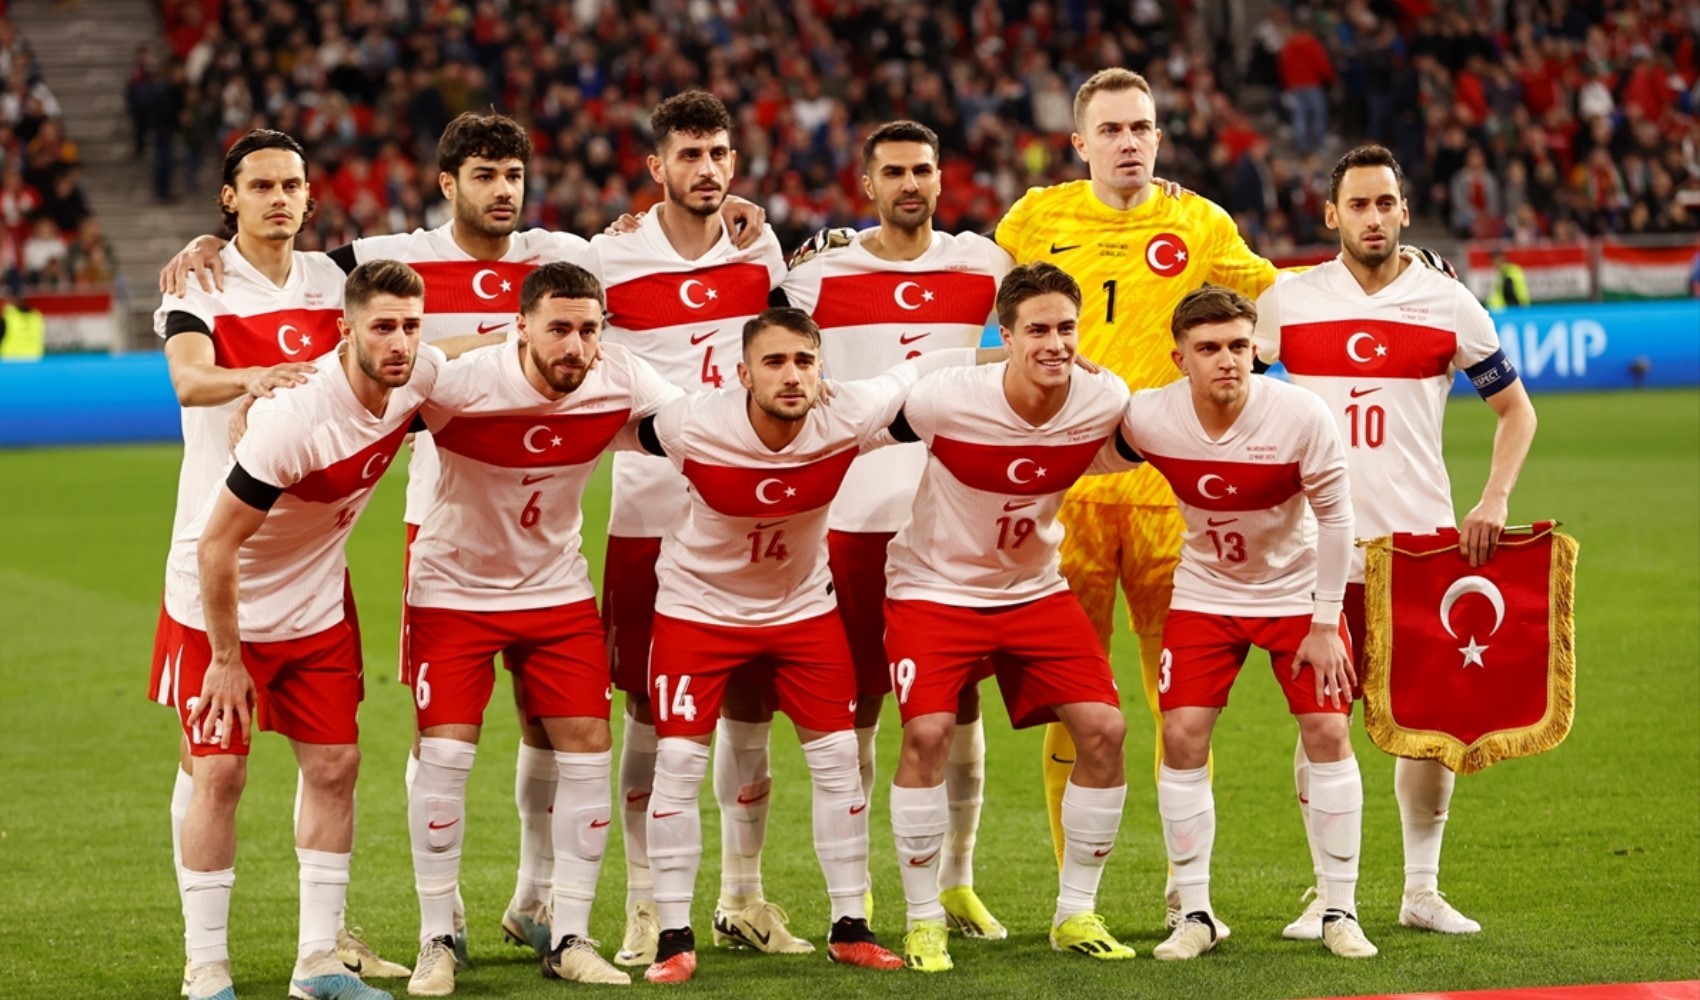 A Milli Futbol Takımı, Avusturya maçının hazırlıklarına başladı